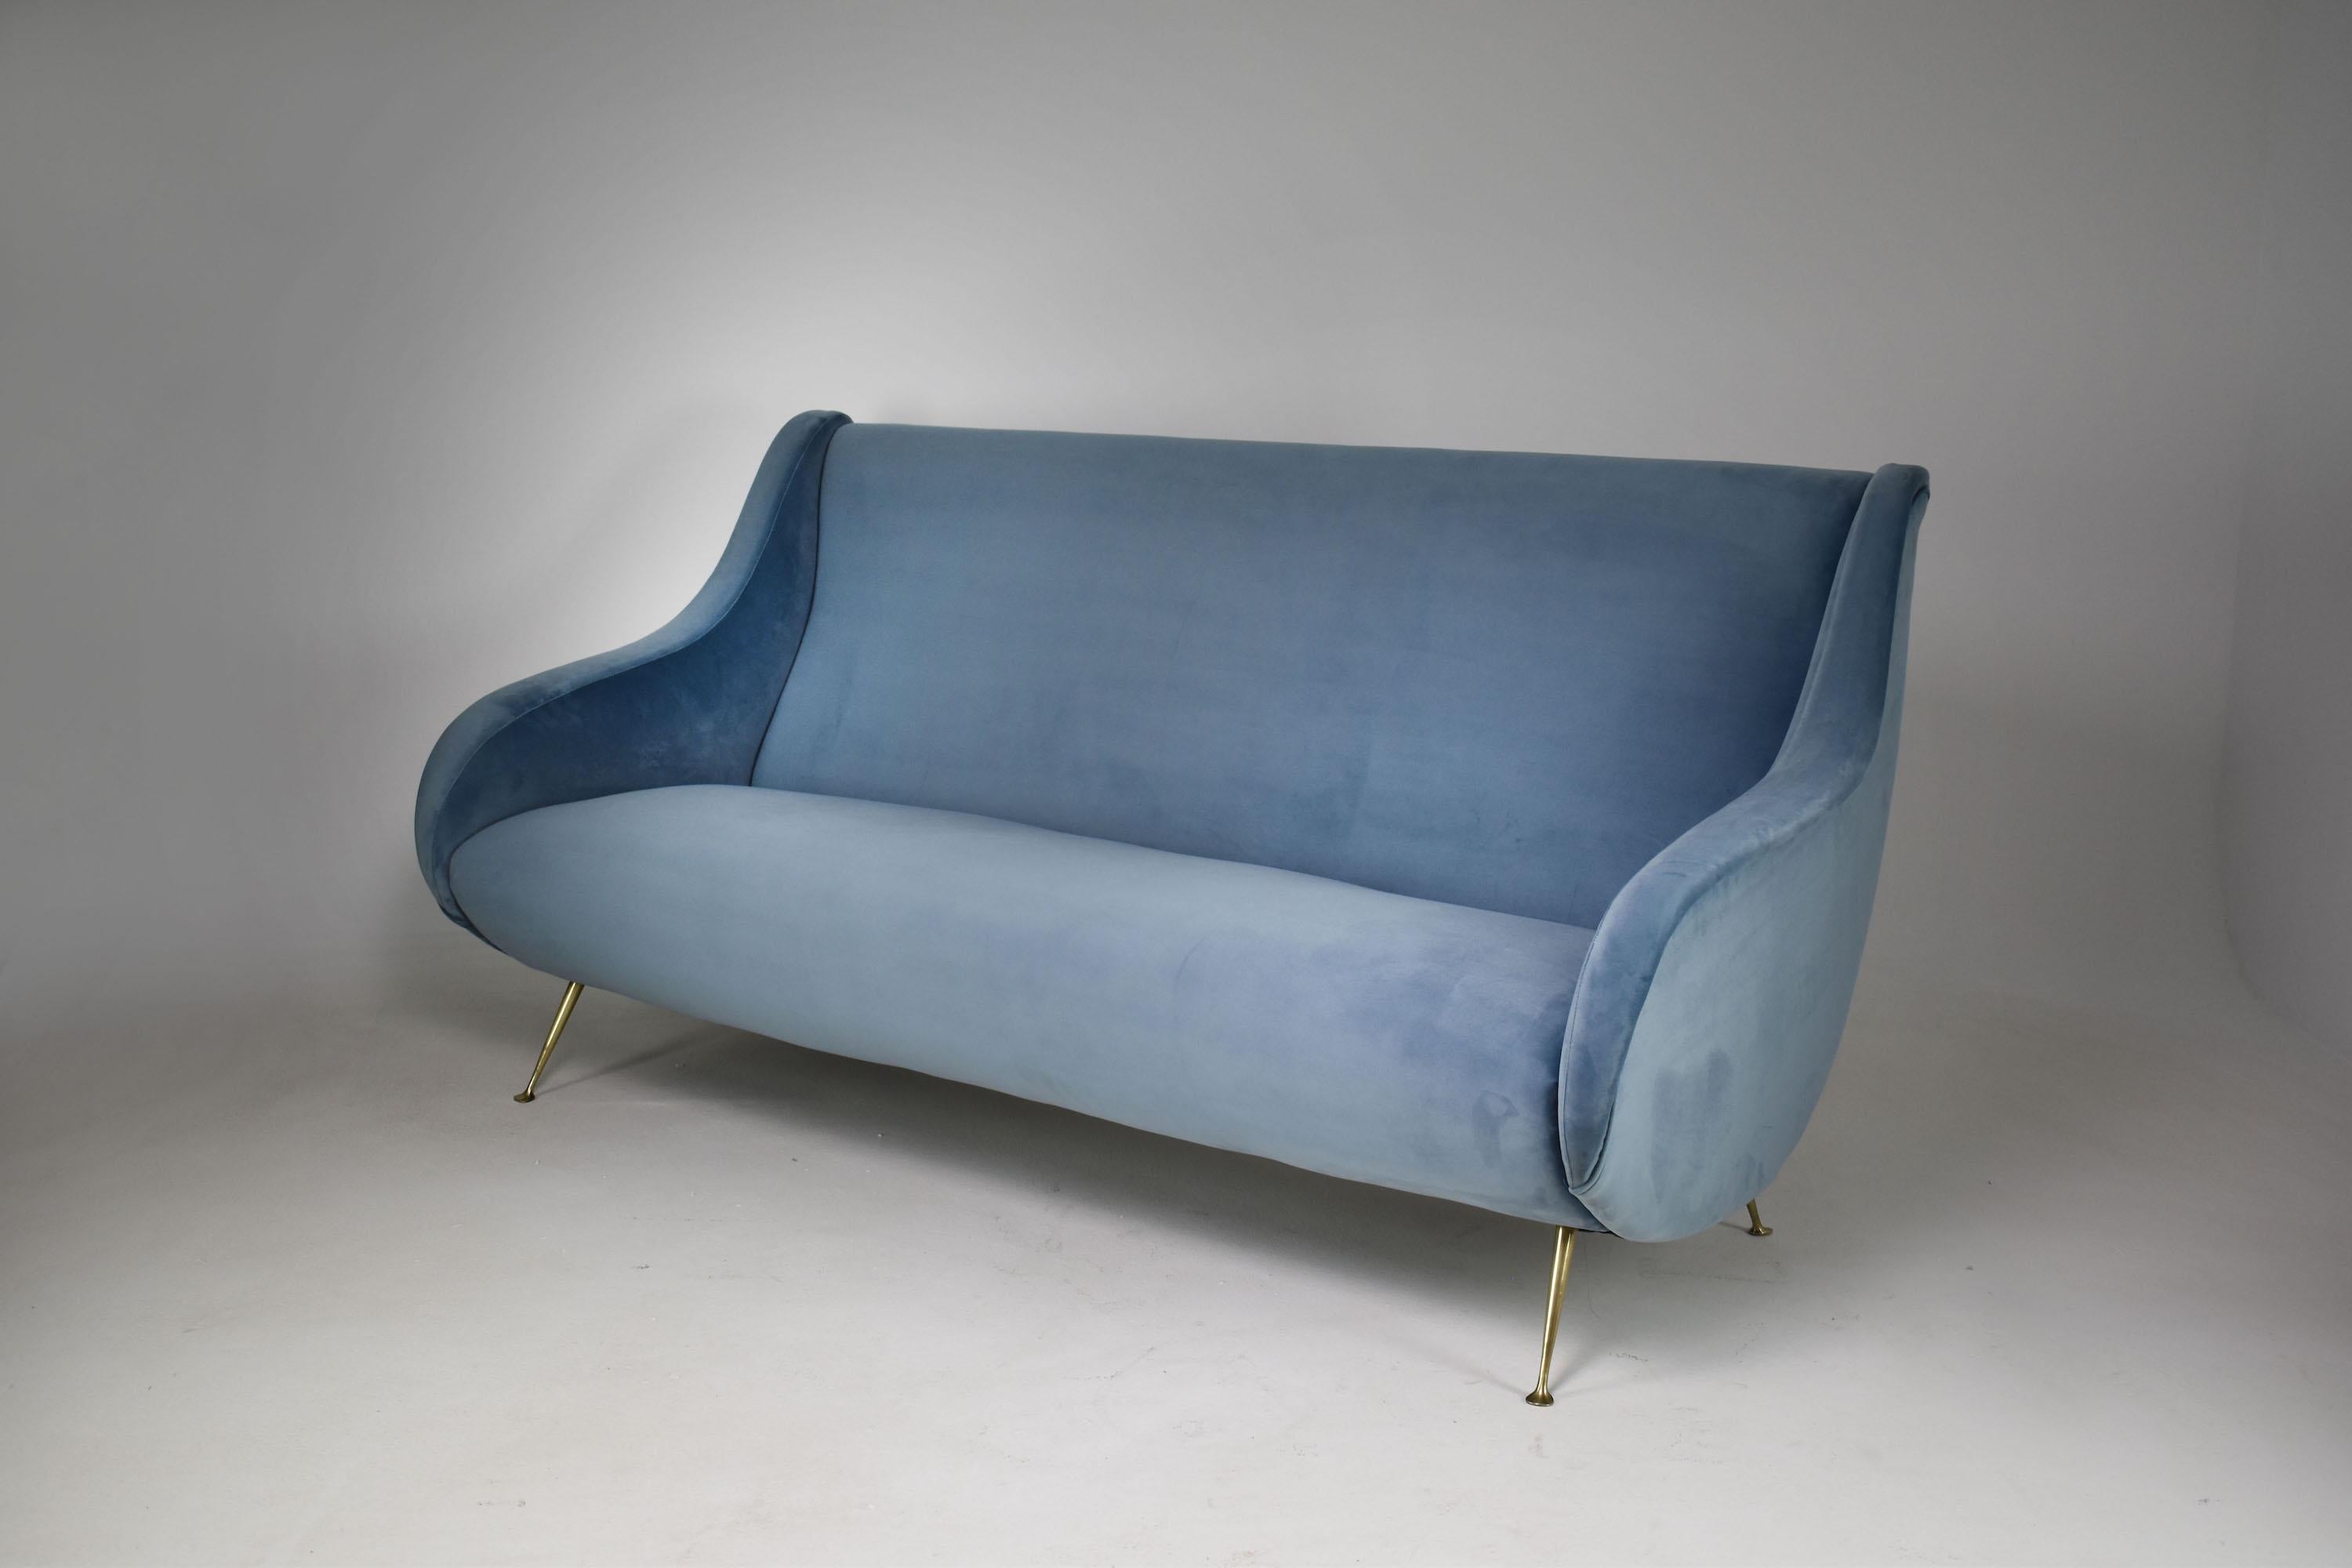 Ein atemberaubendes italienisches Dreisitzer-Sofa aus dem 20. Jahrhundert mit schönen Kurven, vollständig und fachmännisch restauriert mit neuem hellblauem Samtbezug und Schaumstoffpolsterung. 
Italien 1950er Jahre 

-------

Wir sind ein